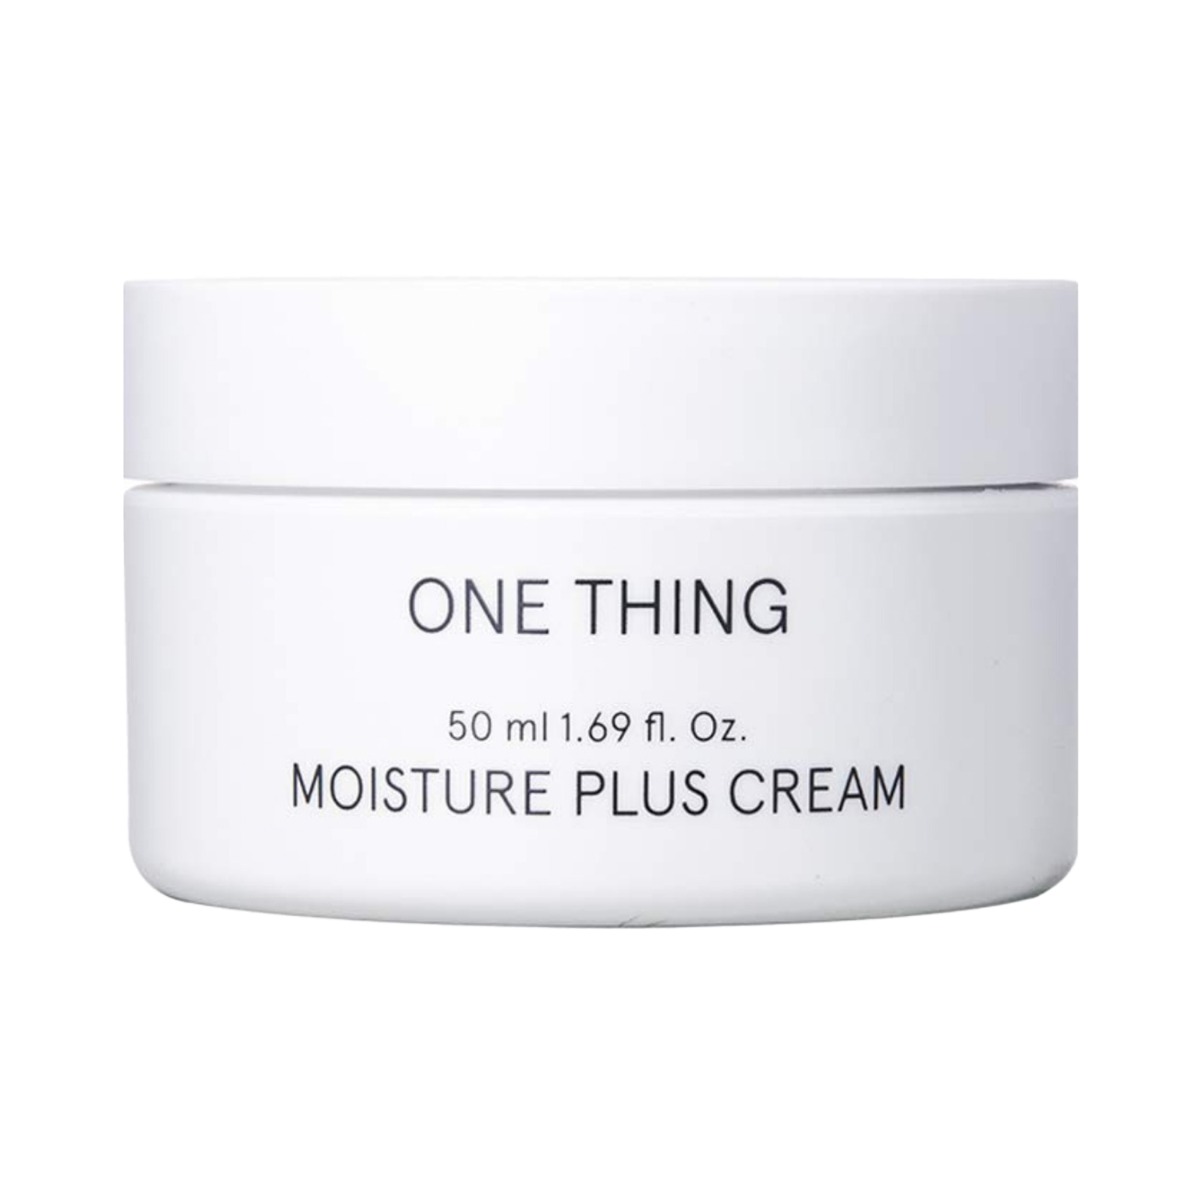 One Thing Moisture Plus Cream, 50ml